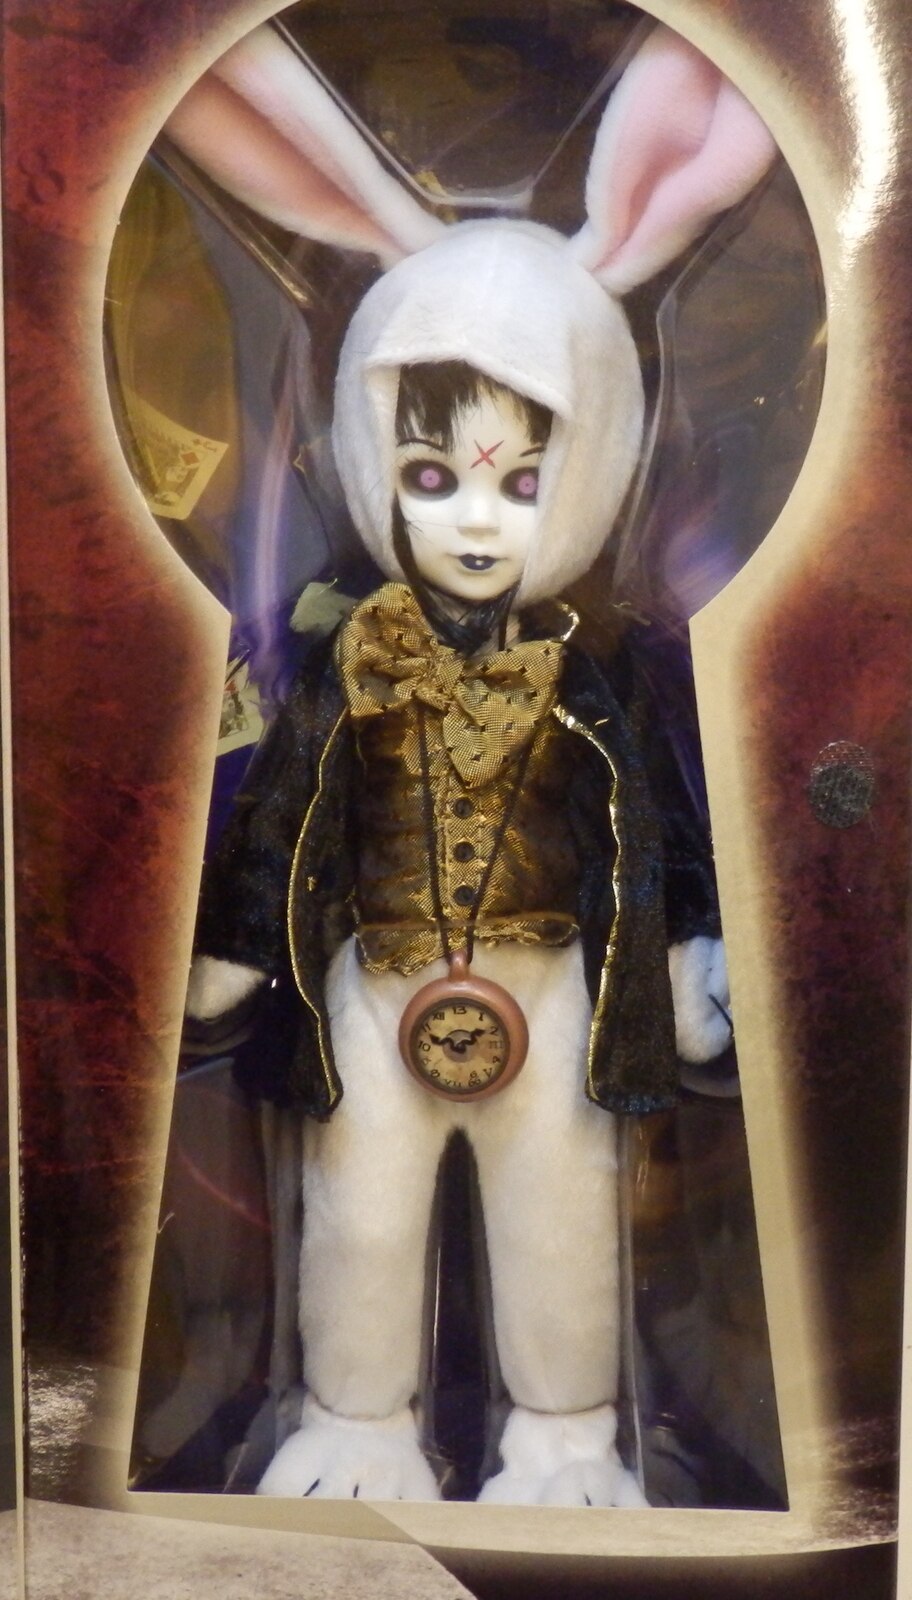 Mezco Living Dead Dolls in Wonderland Eggzorcist as the White